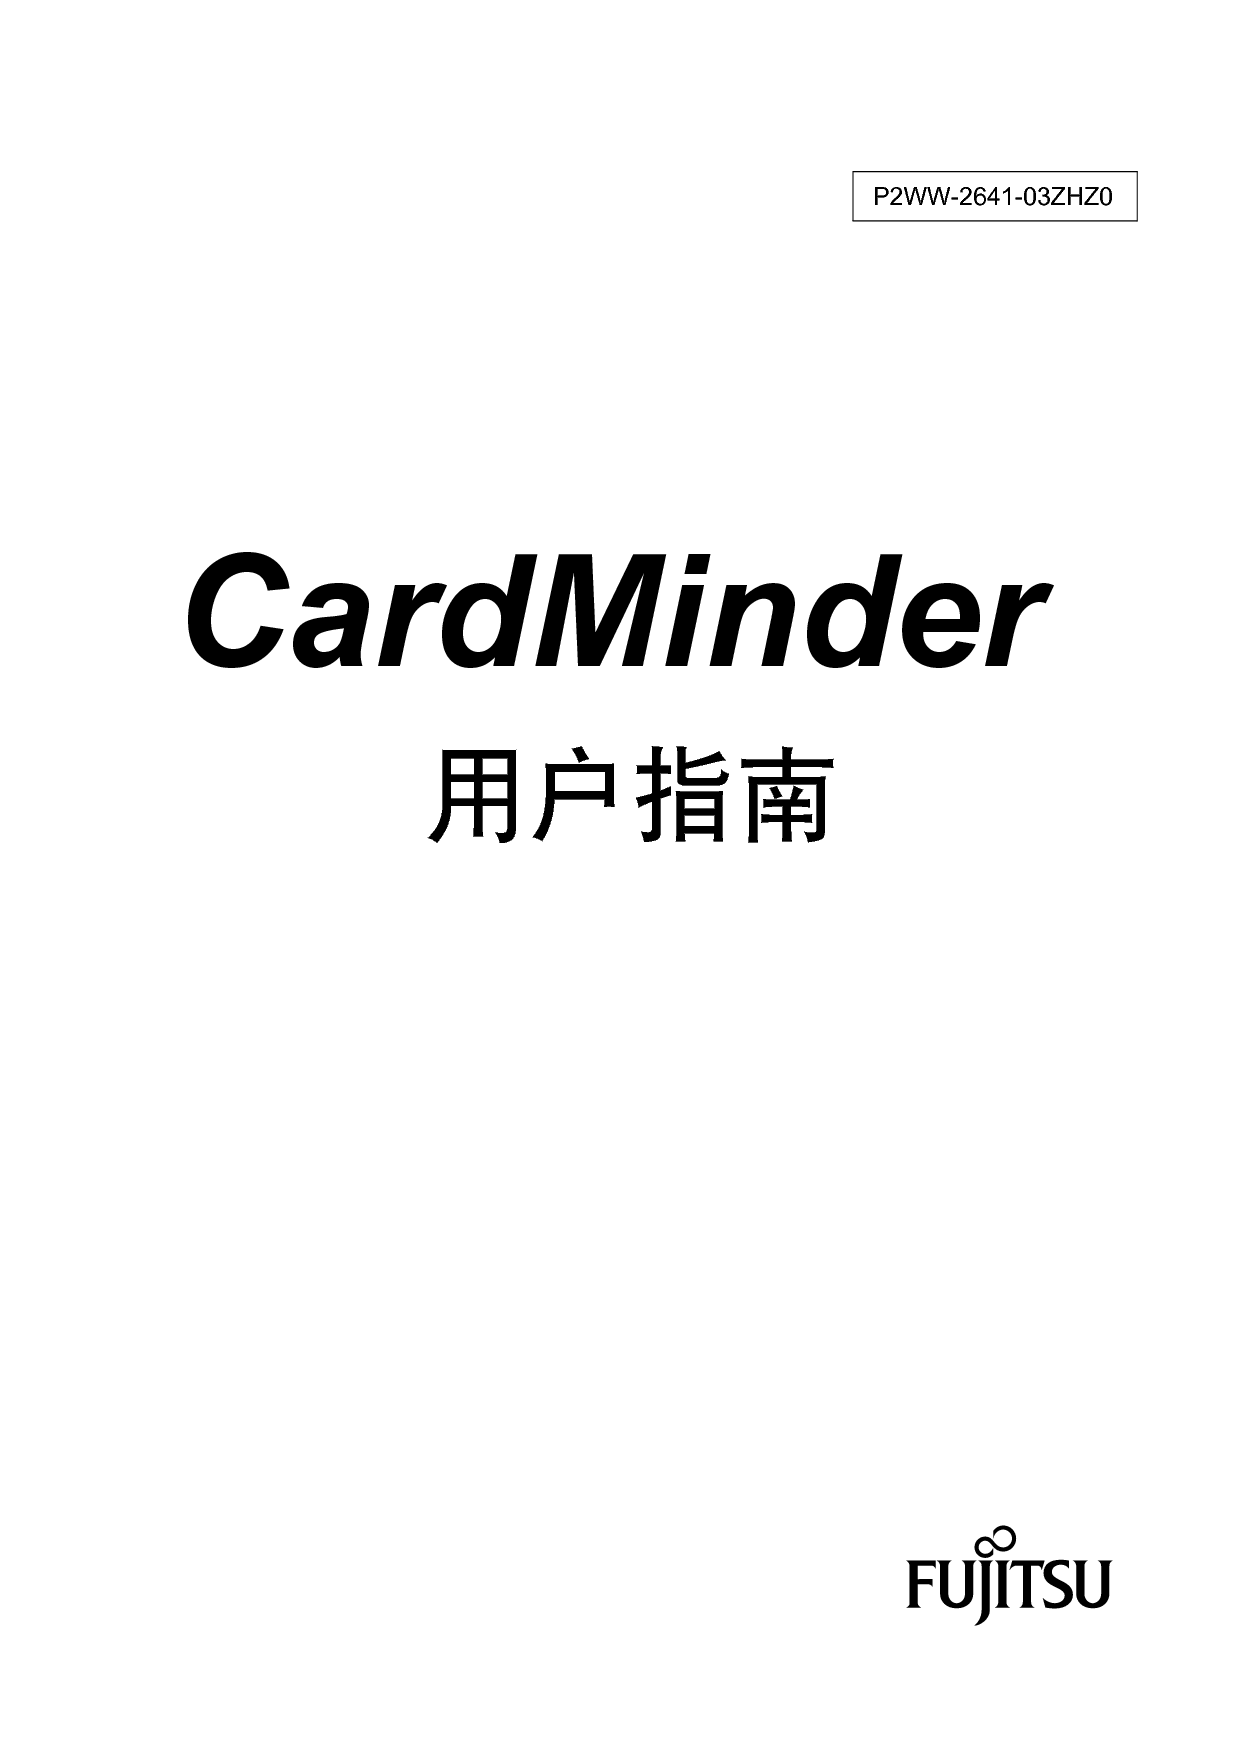 富士通 Fujitsu CardMinder 2011 用户指南 封面